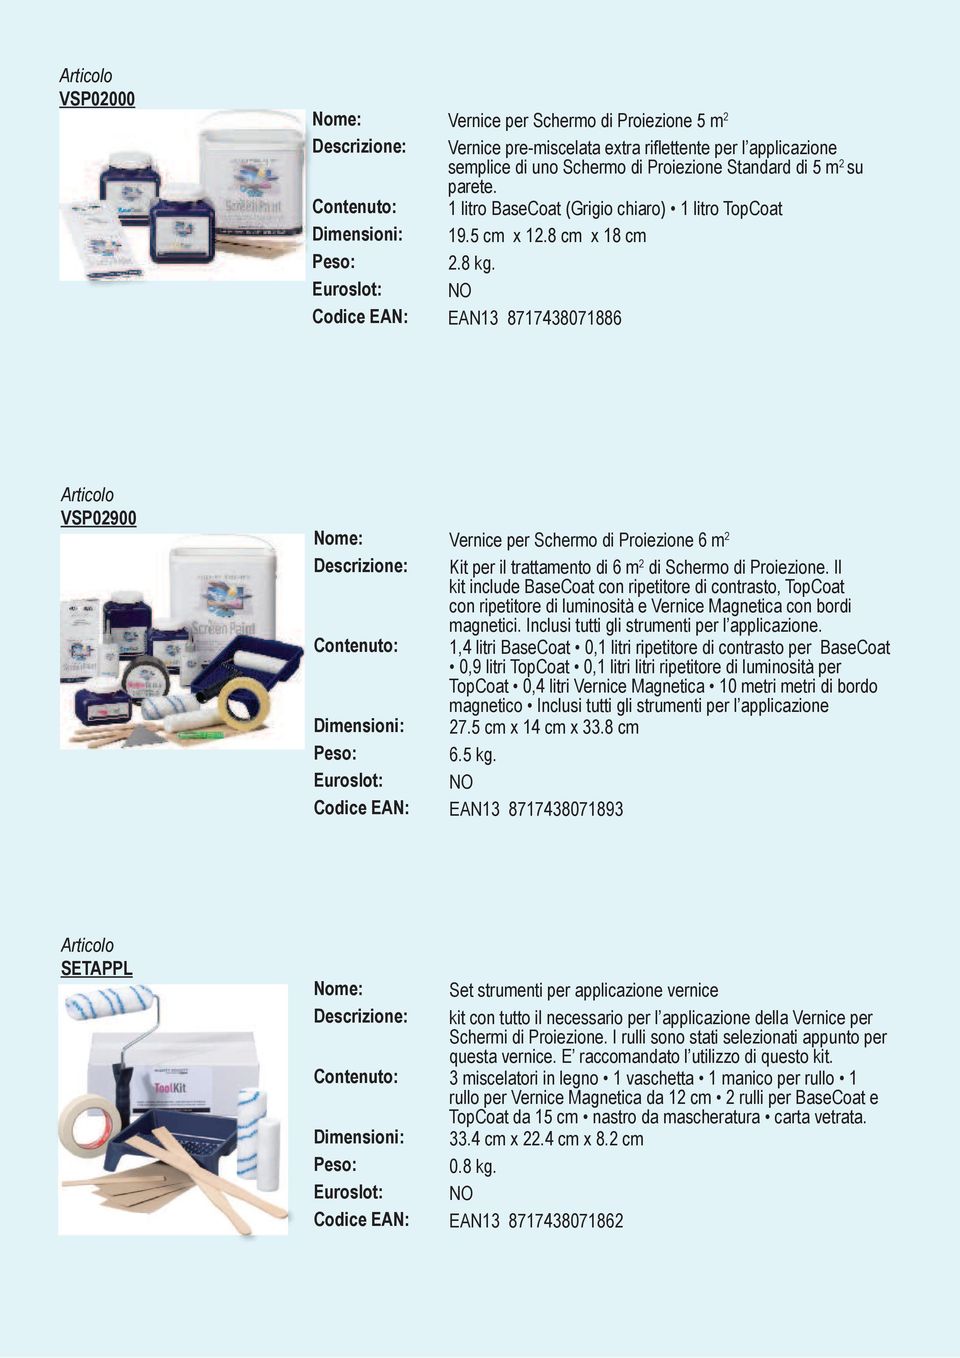 Euroslot: NO Codice EAN: EAN13 8717438071886 VSP02900 Vernice per Schermo di Proiezione 6 m 2 Kit per il trattamento di 6 m 2 di Schermo di Proiezione.